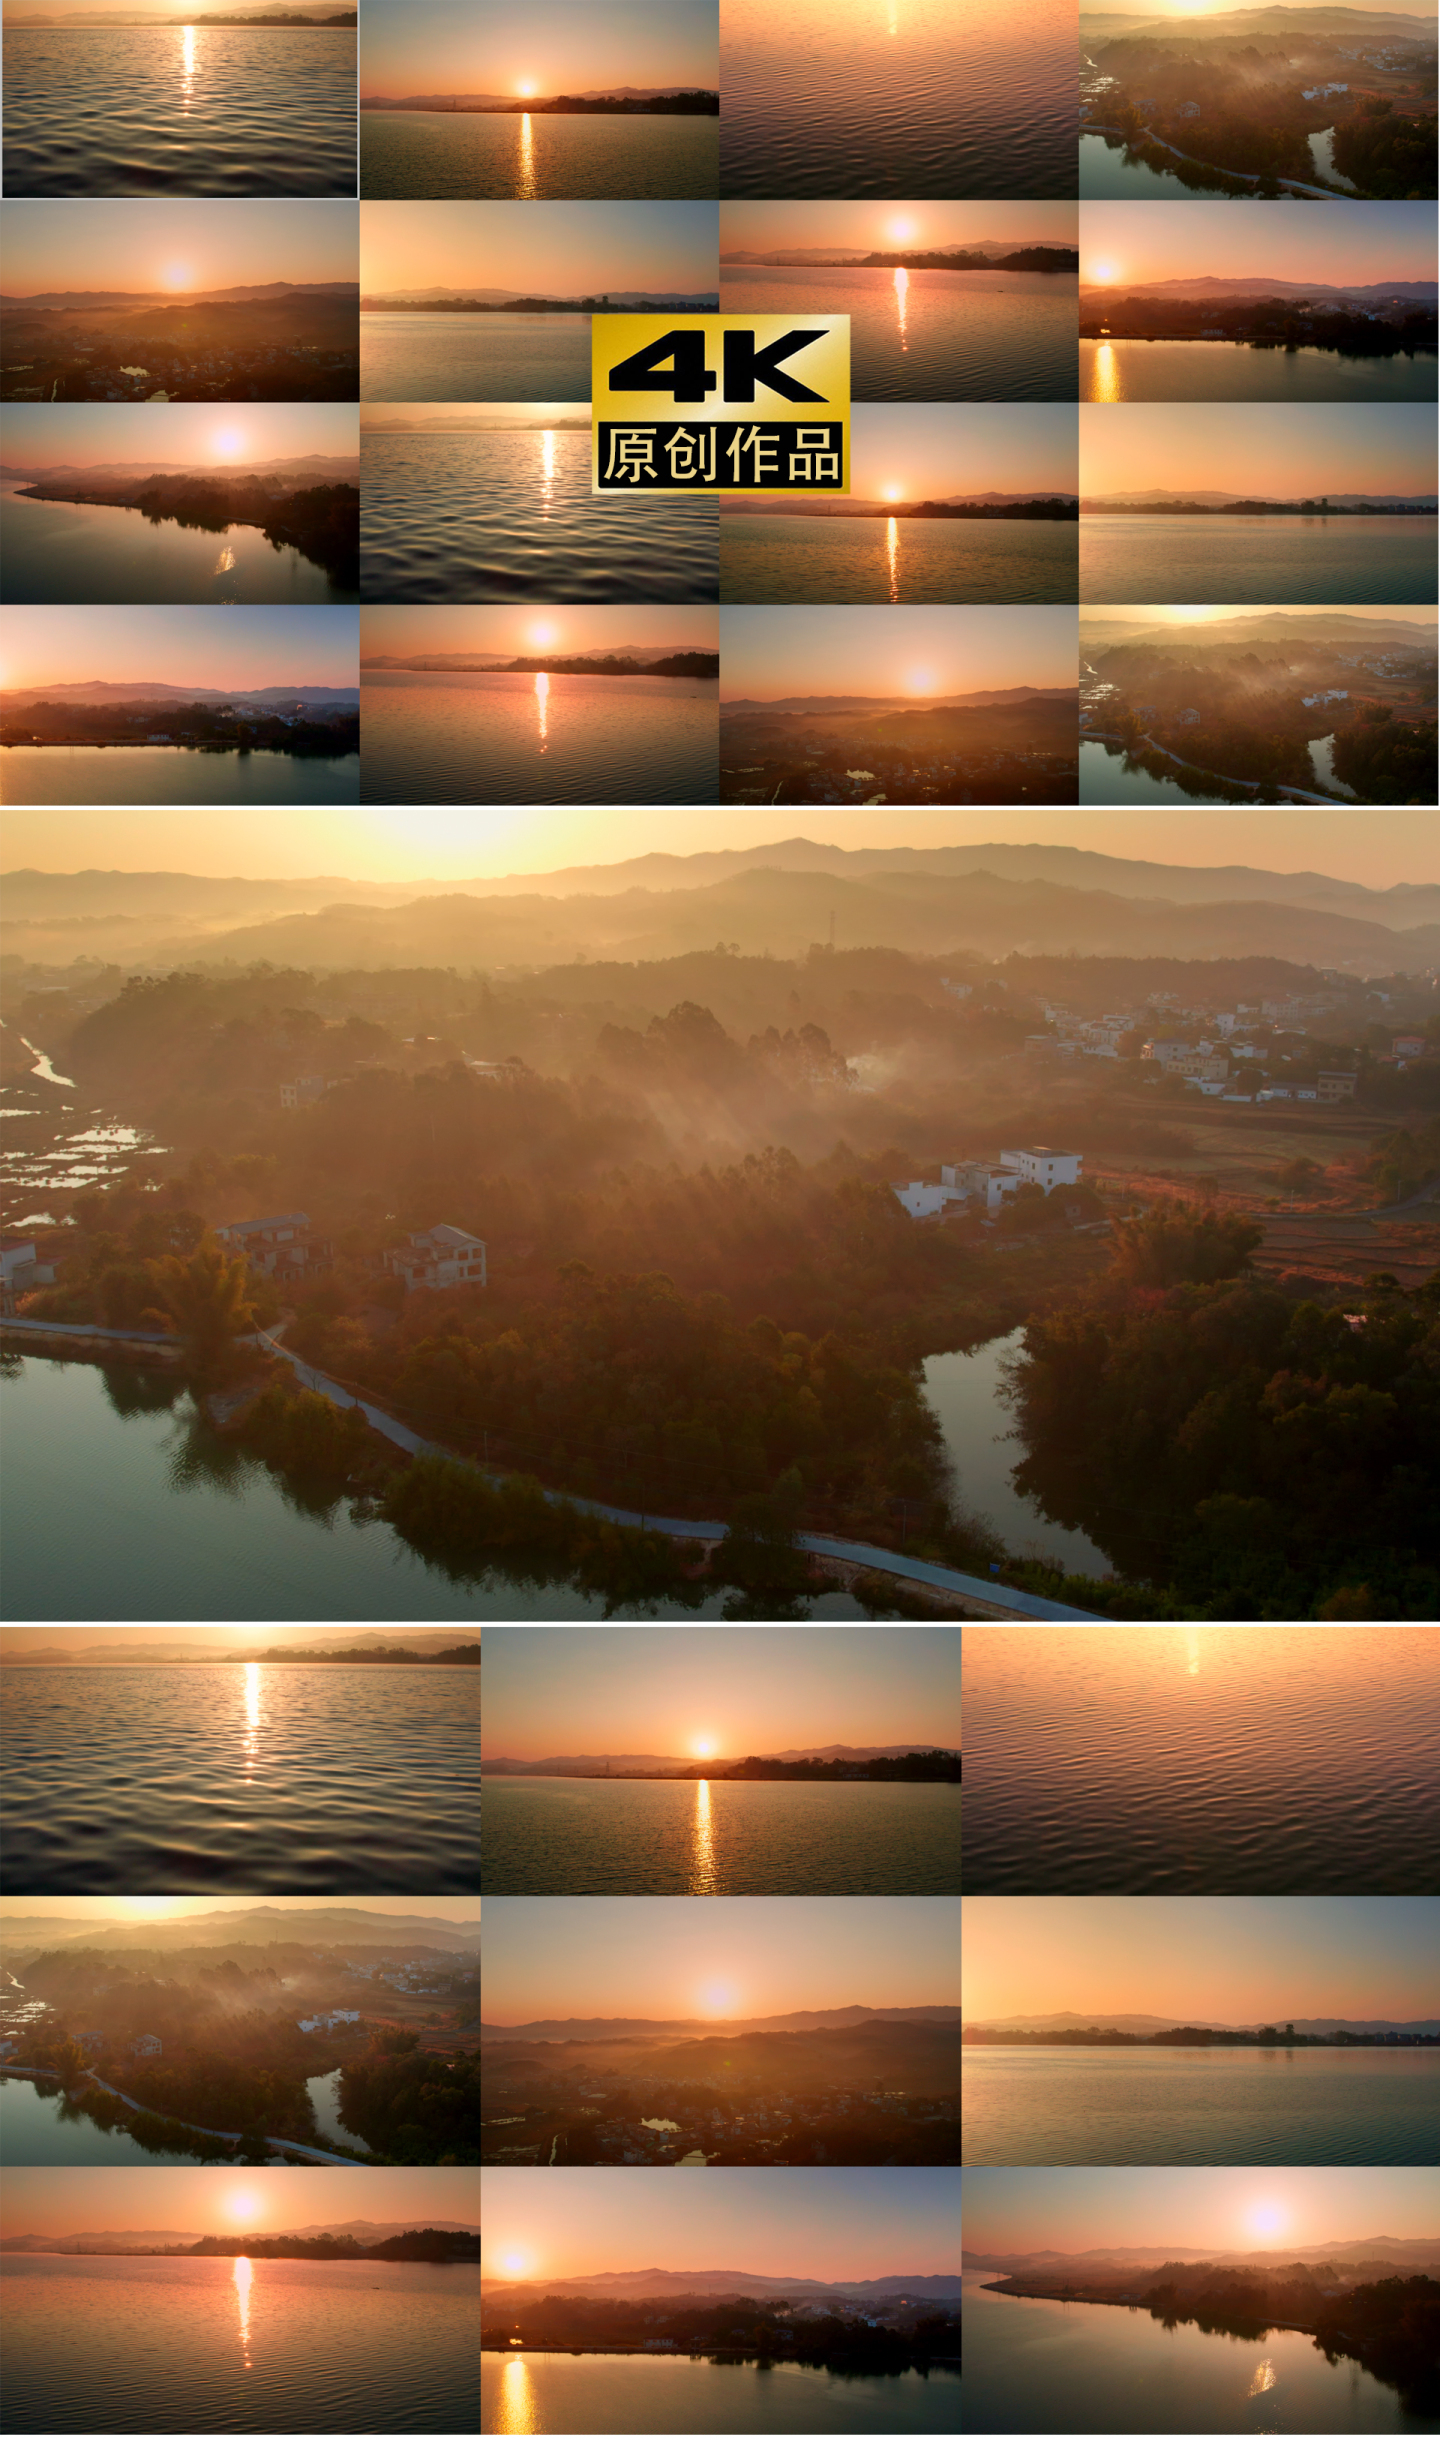 山河壮丽太阳升起穿越向前阳光湖泊山水风景